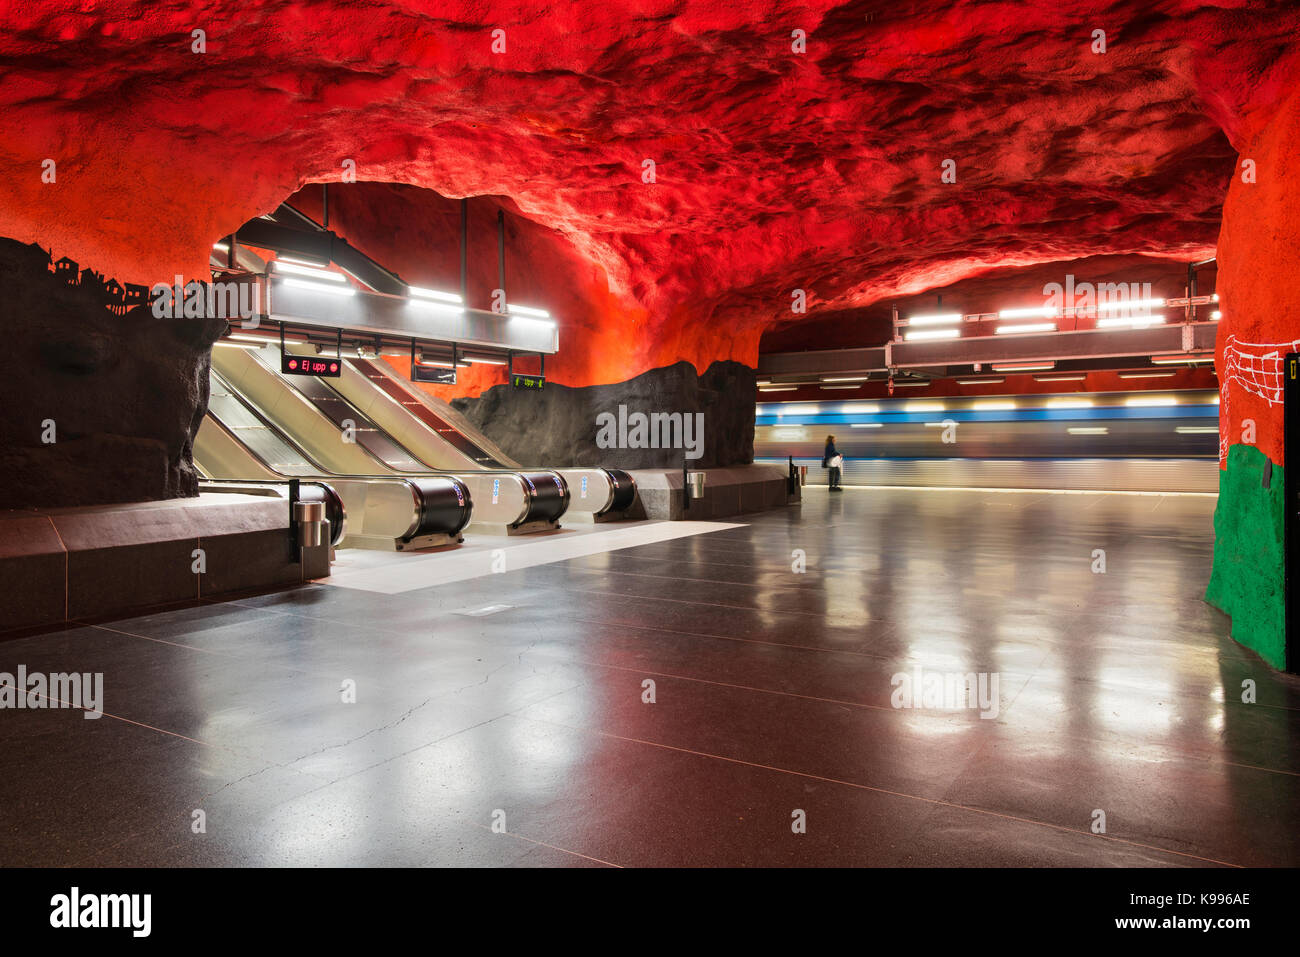 Solna Centrum station sur le métro de Stockholm, ou T-Bana, en Suède. Le métro de Stockholm est considéré comme le plus ancien musée d'art dans le monde. Banque D'Images